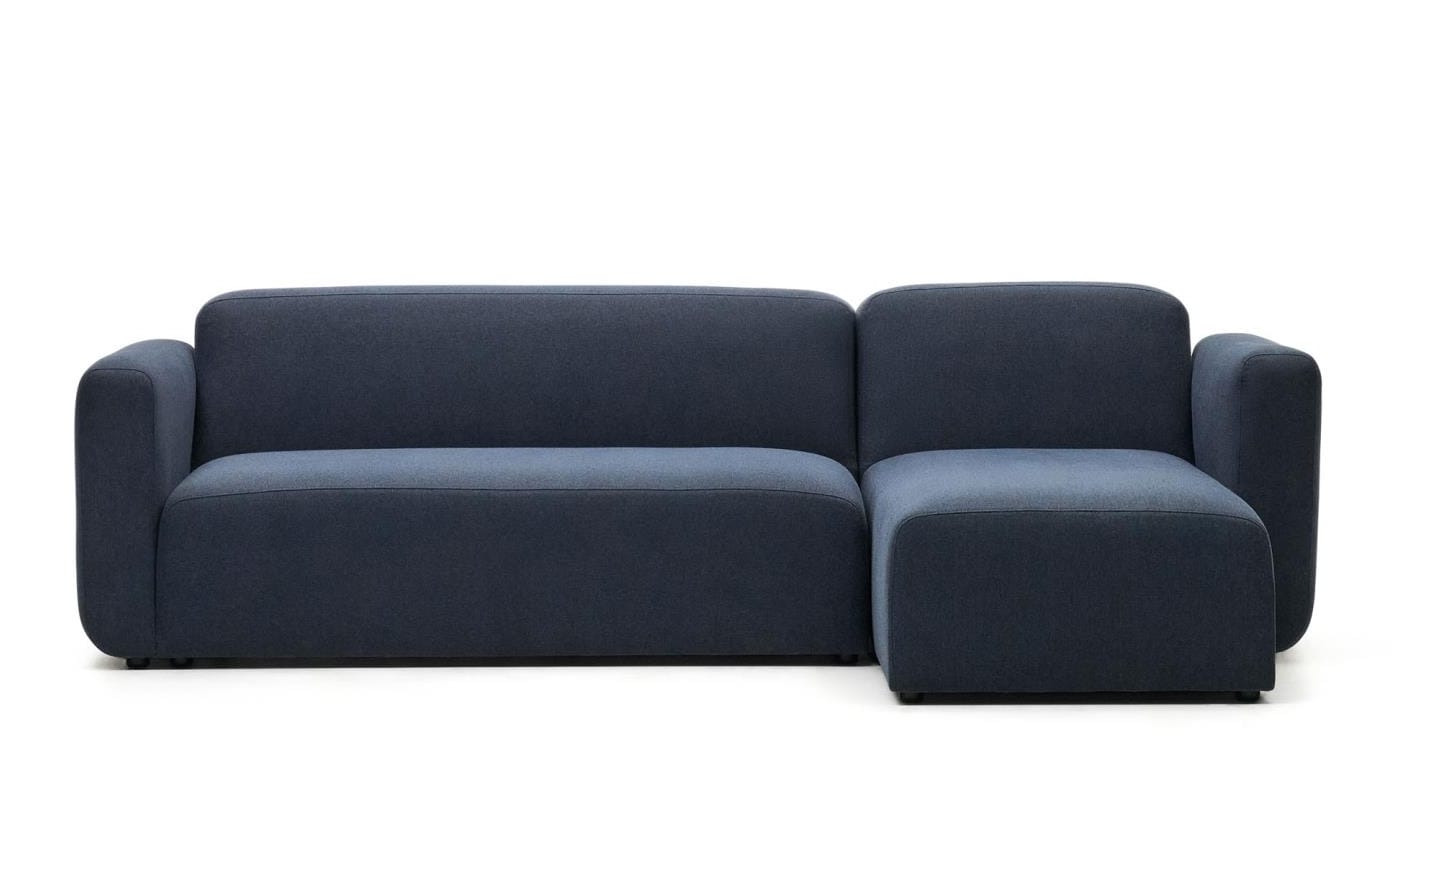 Sofá Chaise Longue Neom Azul, estofado em tecido estruturado azul, ideal para sala de estar.